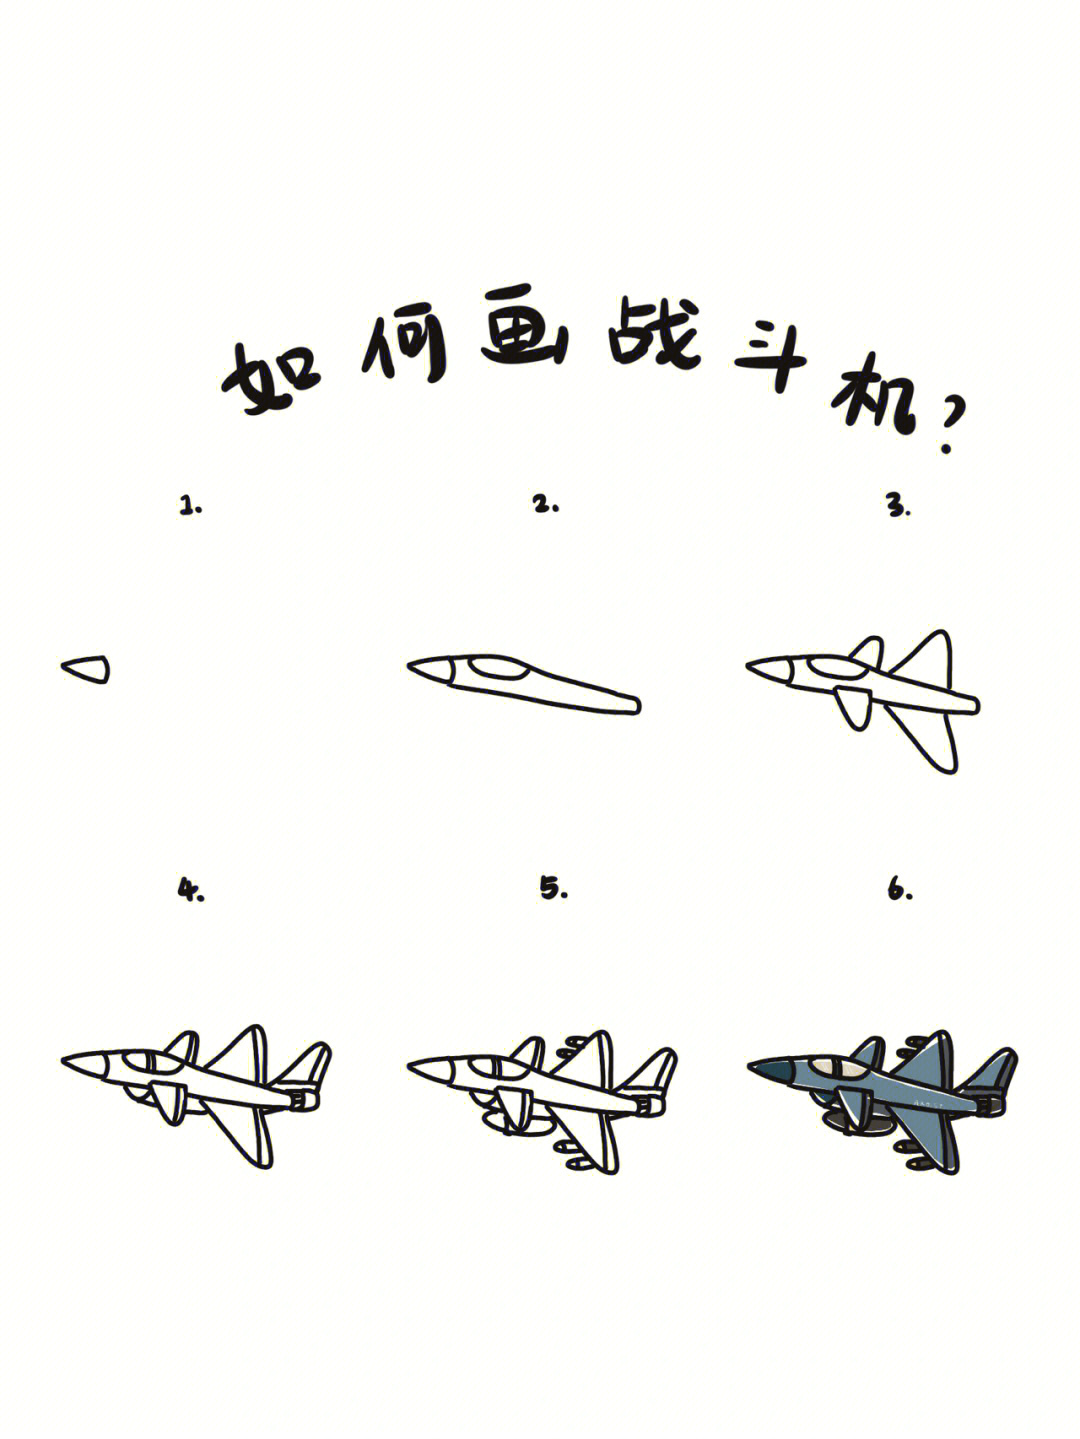 画战斗飞机 画法图片